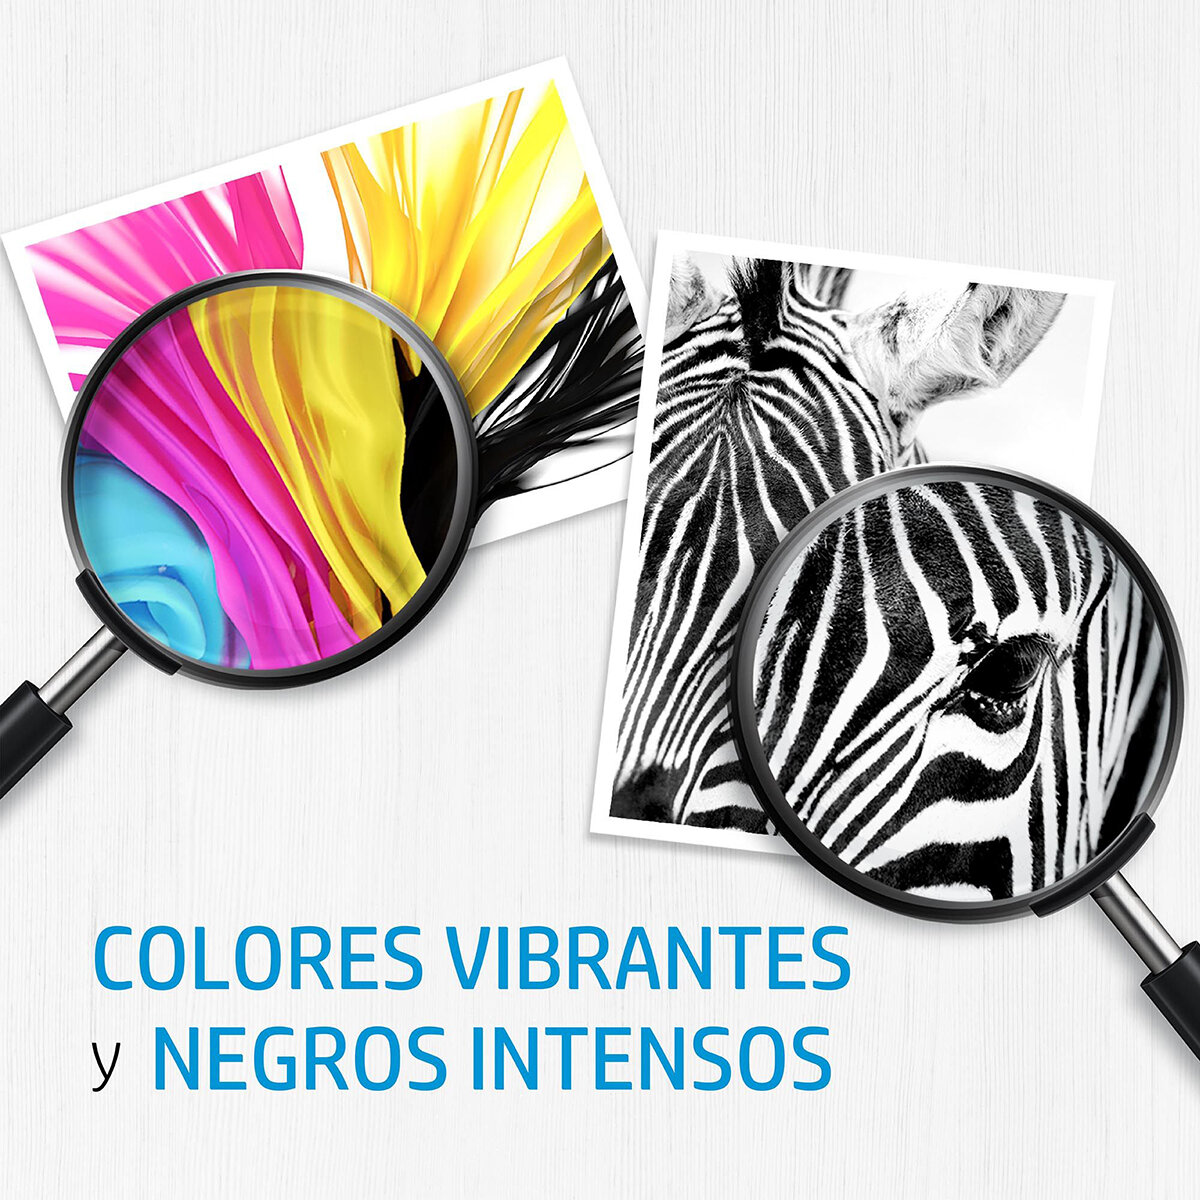 HP954 Cartucho de Tinta 3 Colores